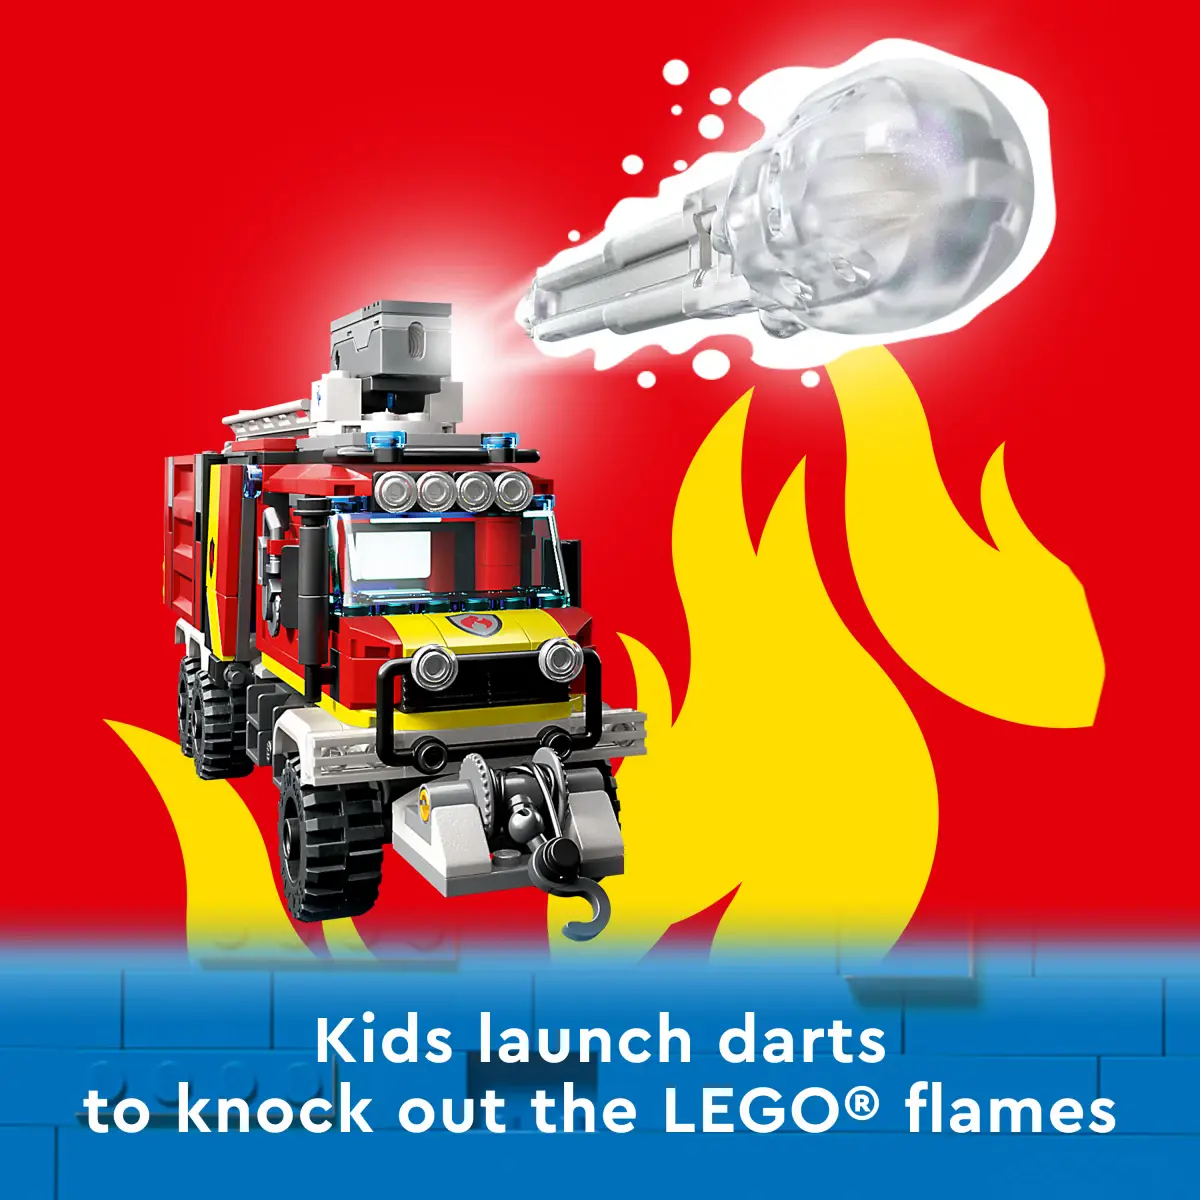 LEGO City Fire Command Unit Building Toy Set, 502 Pieces, Multicolour, 7Y+